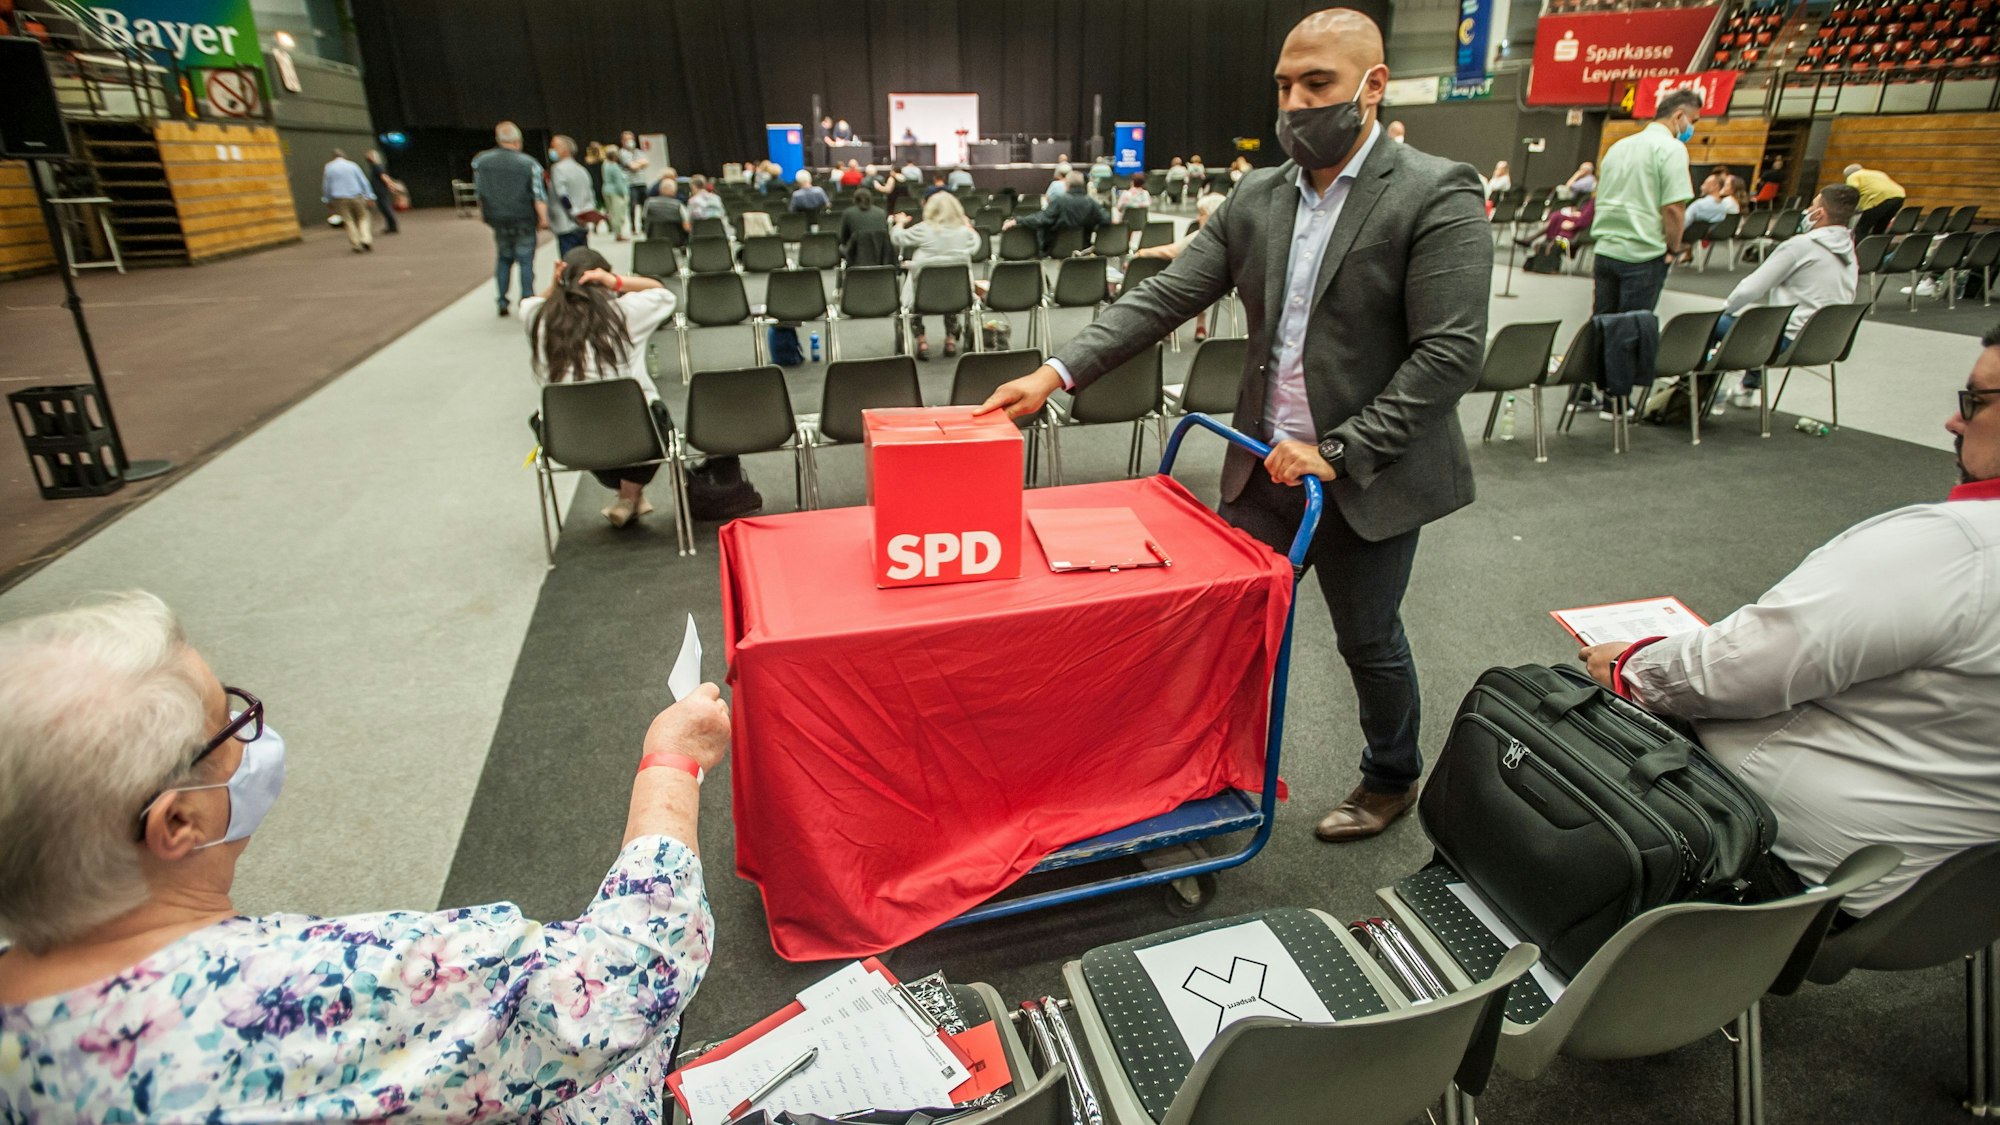 In einer großen Halle sitzen vereinzelt Menschen. Ein Mann schiebt einen kleinen Wagen durch die Sitzreihen. Darauf steht eine Wahlurne mit SPD-Logo.